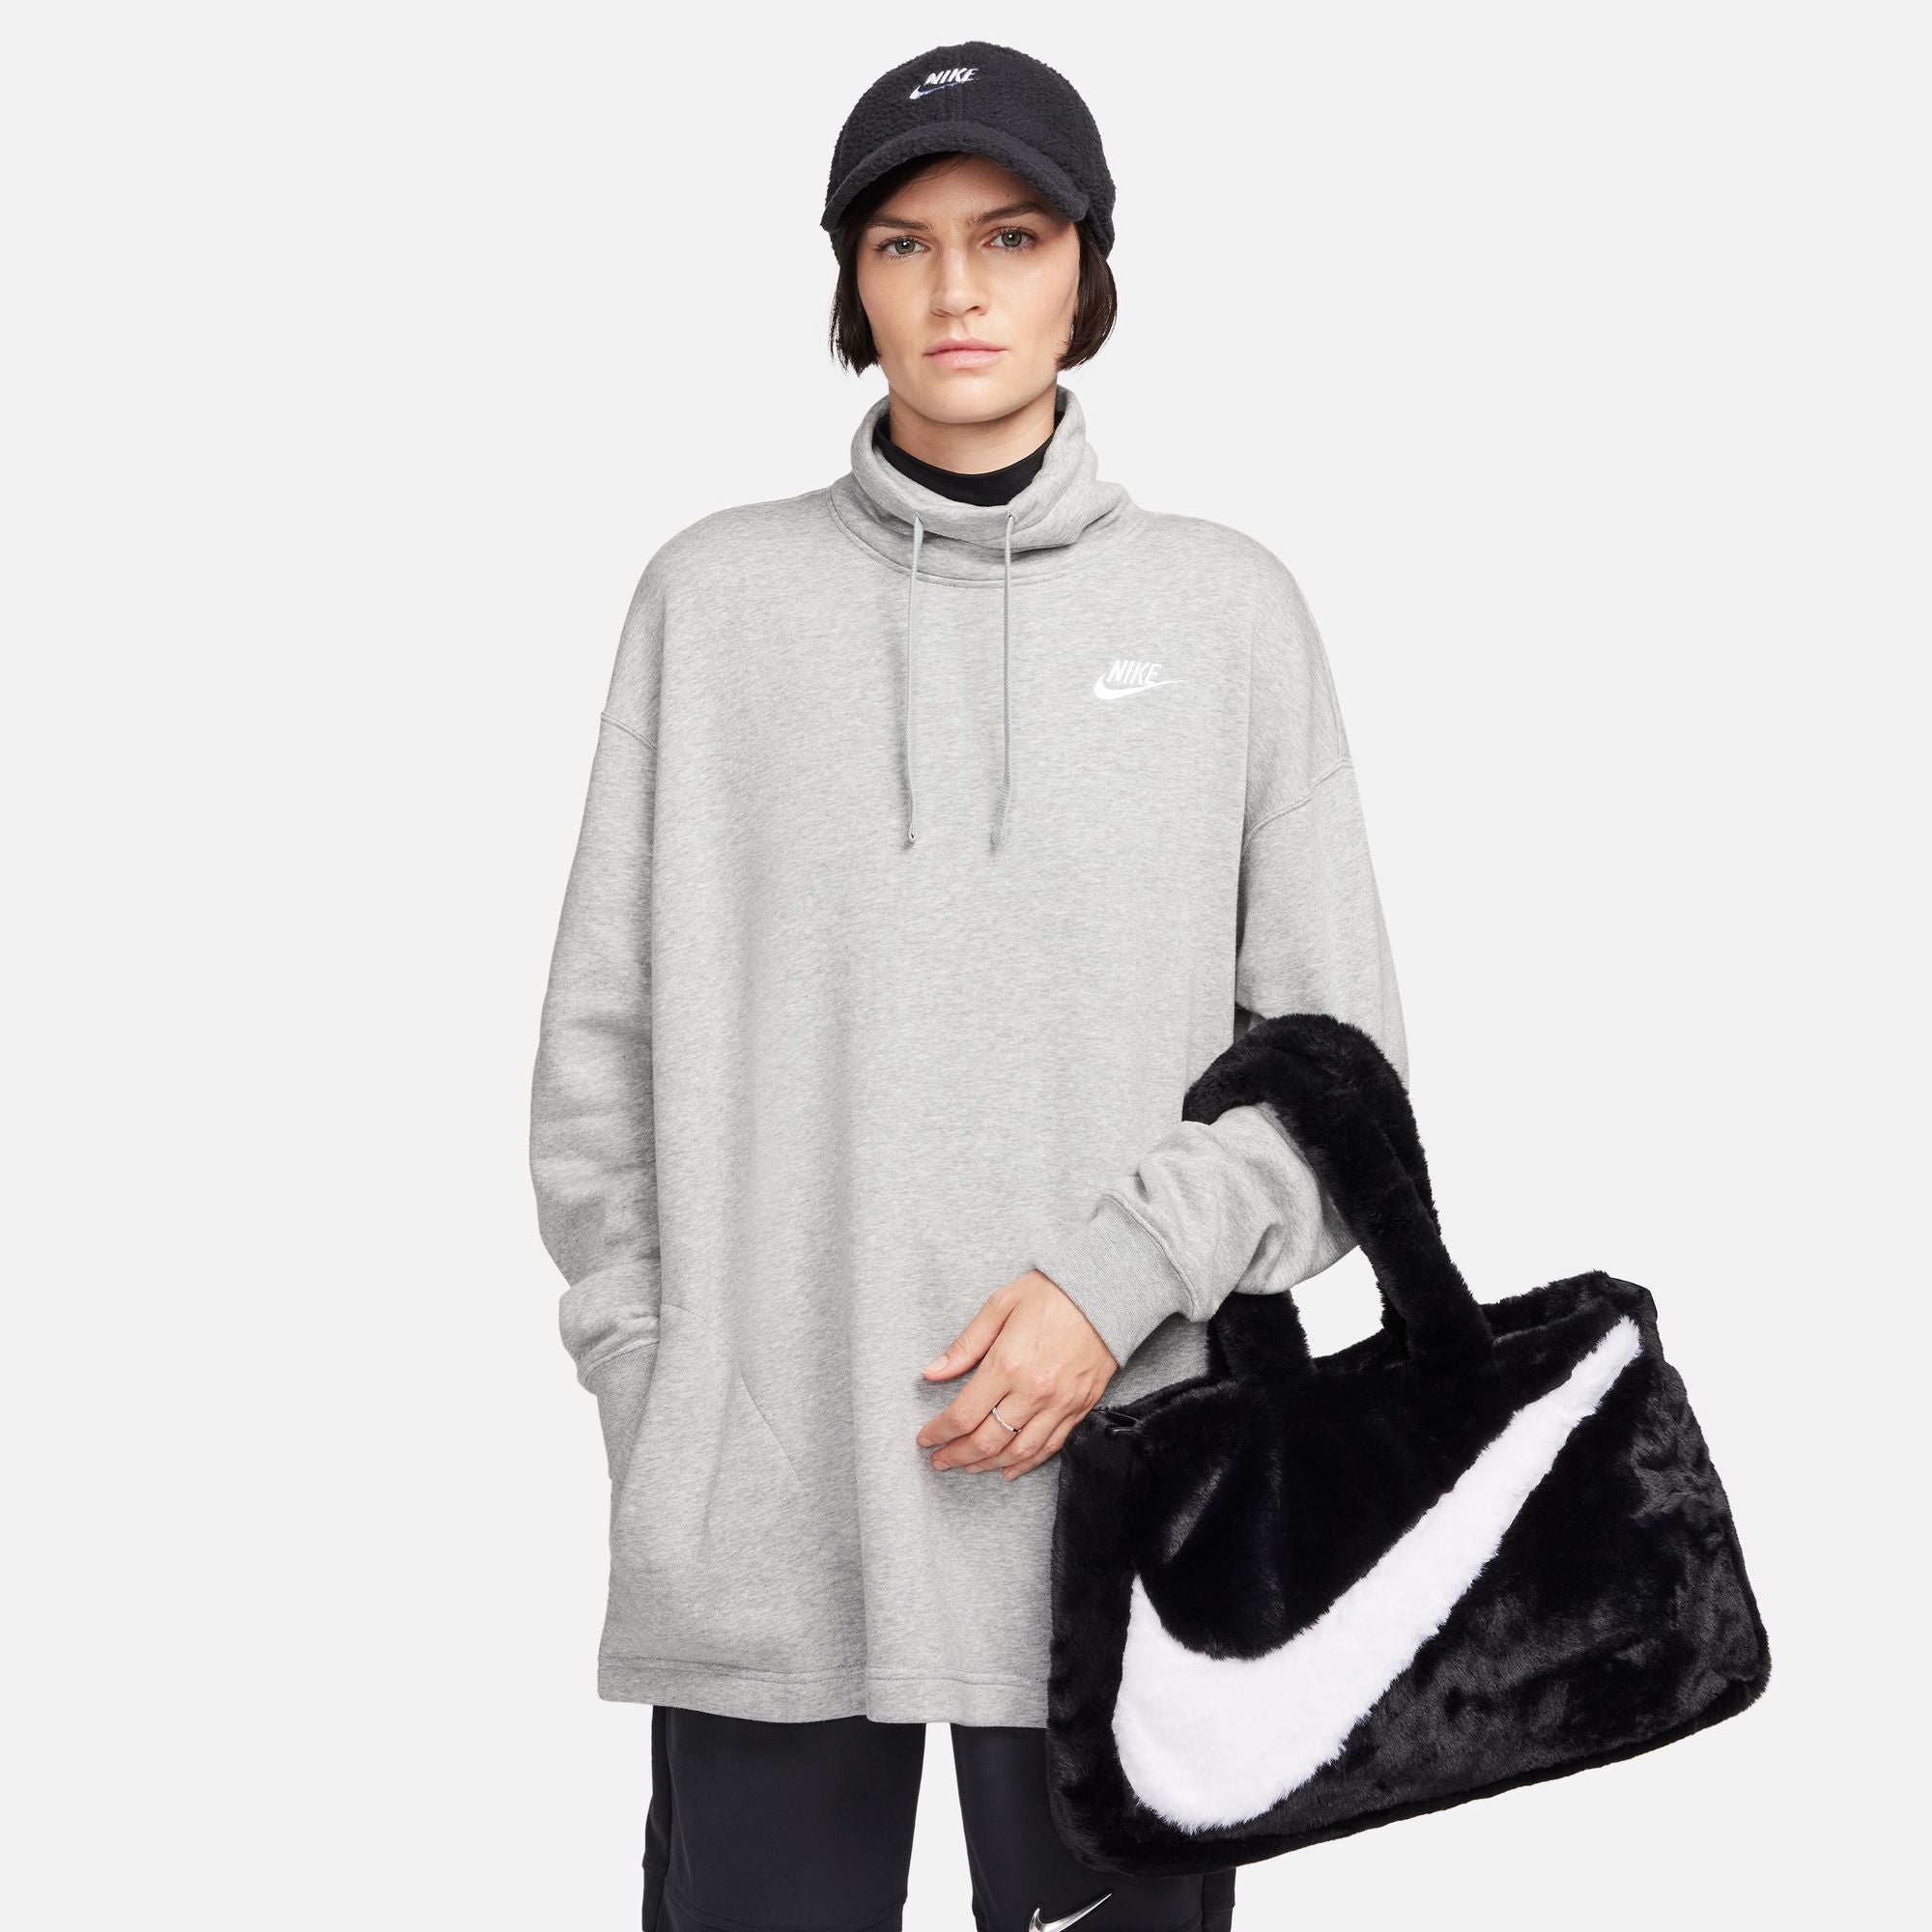 Furry Nike Shoulder Bag